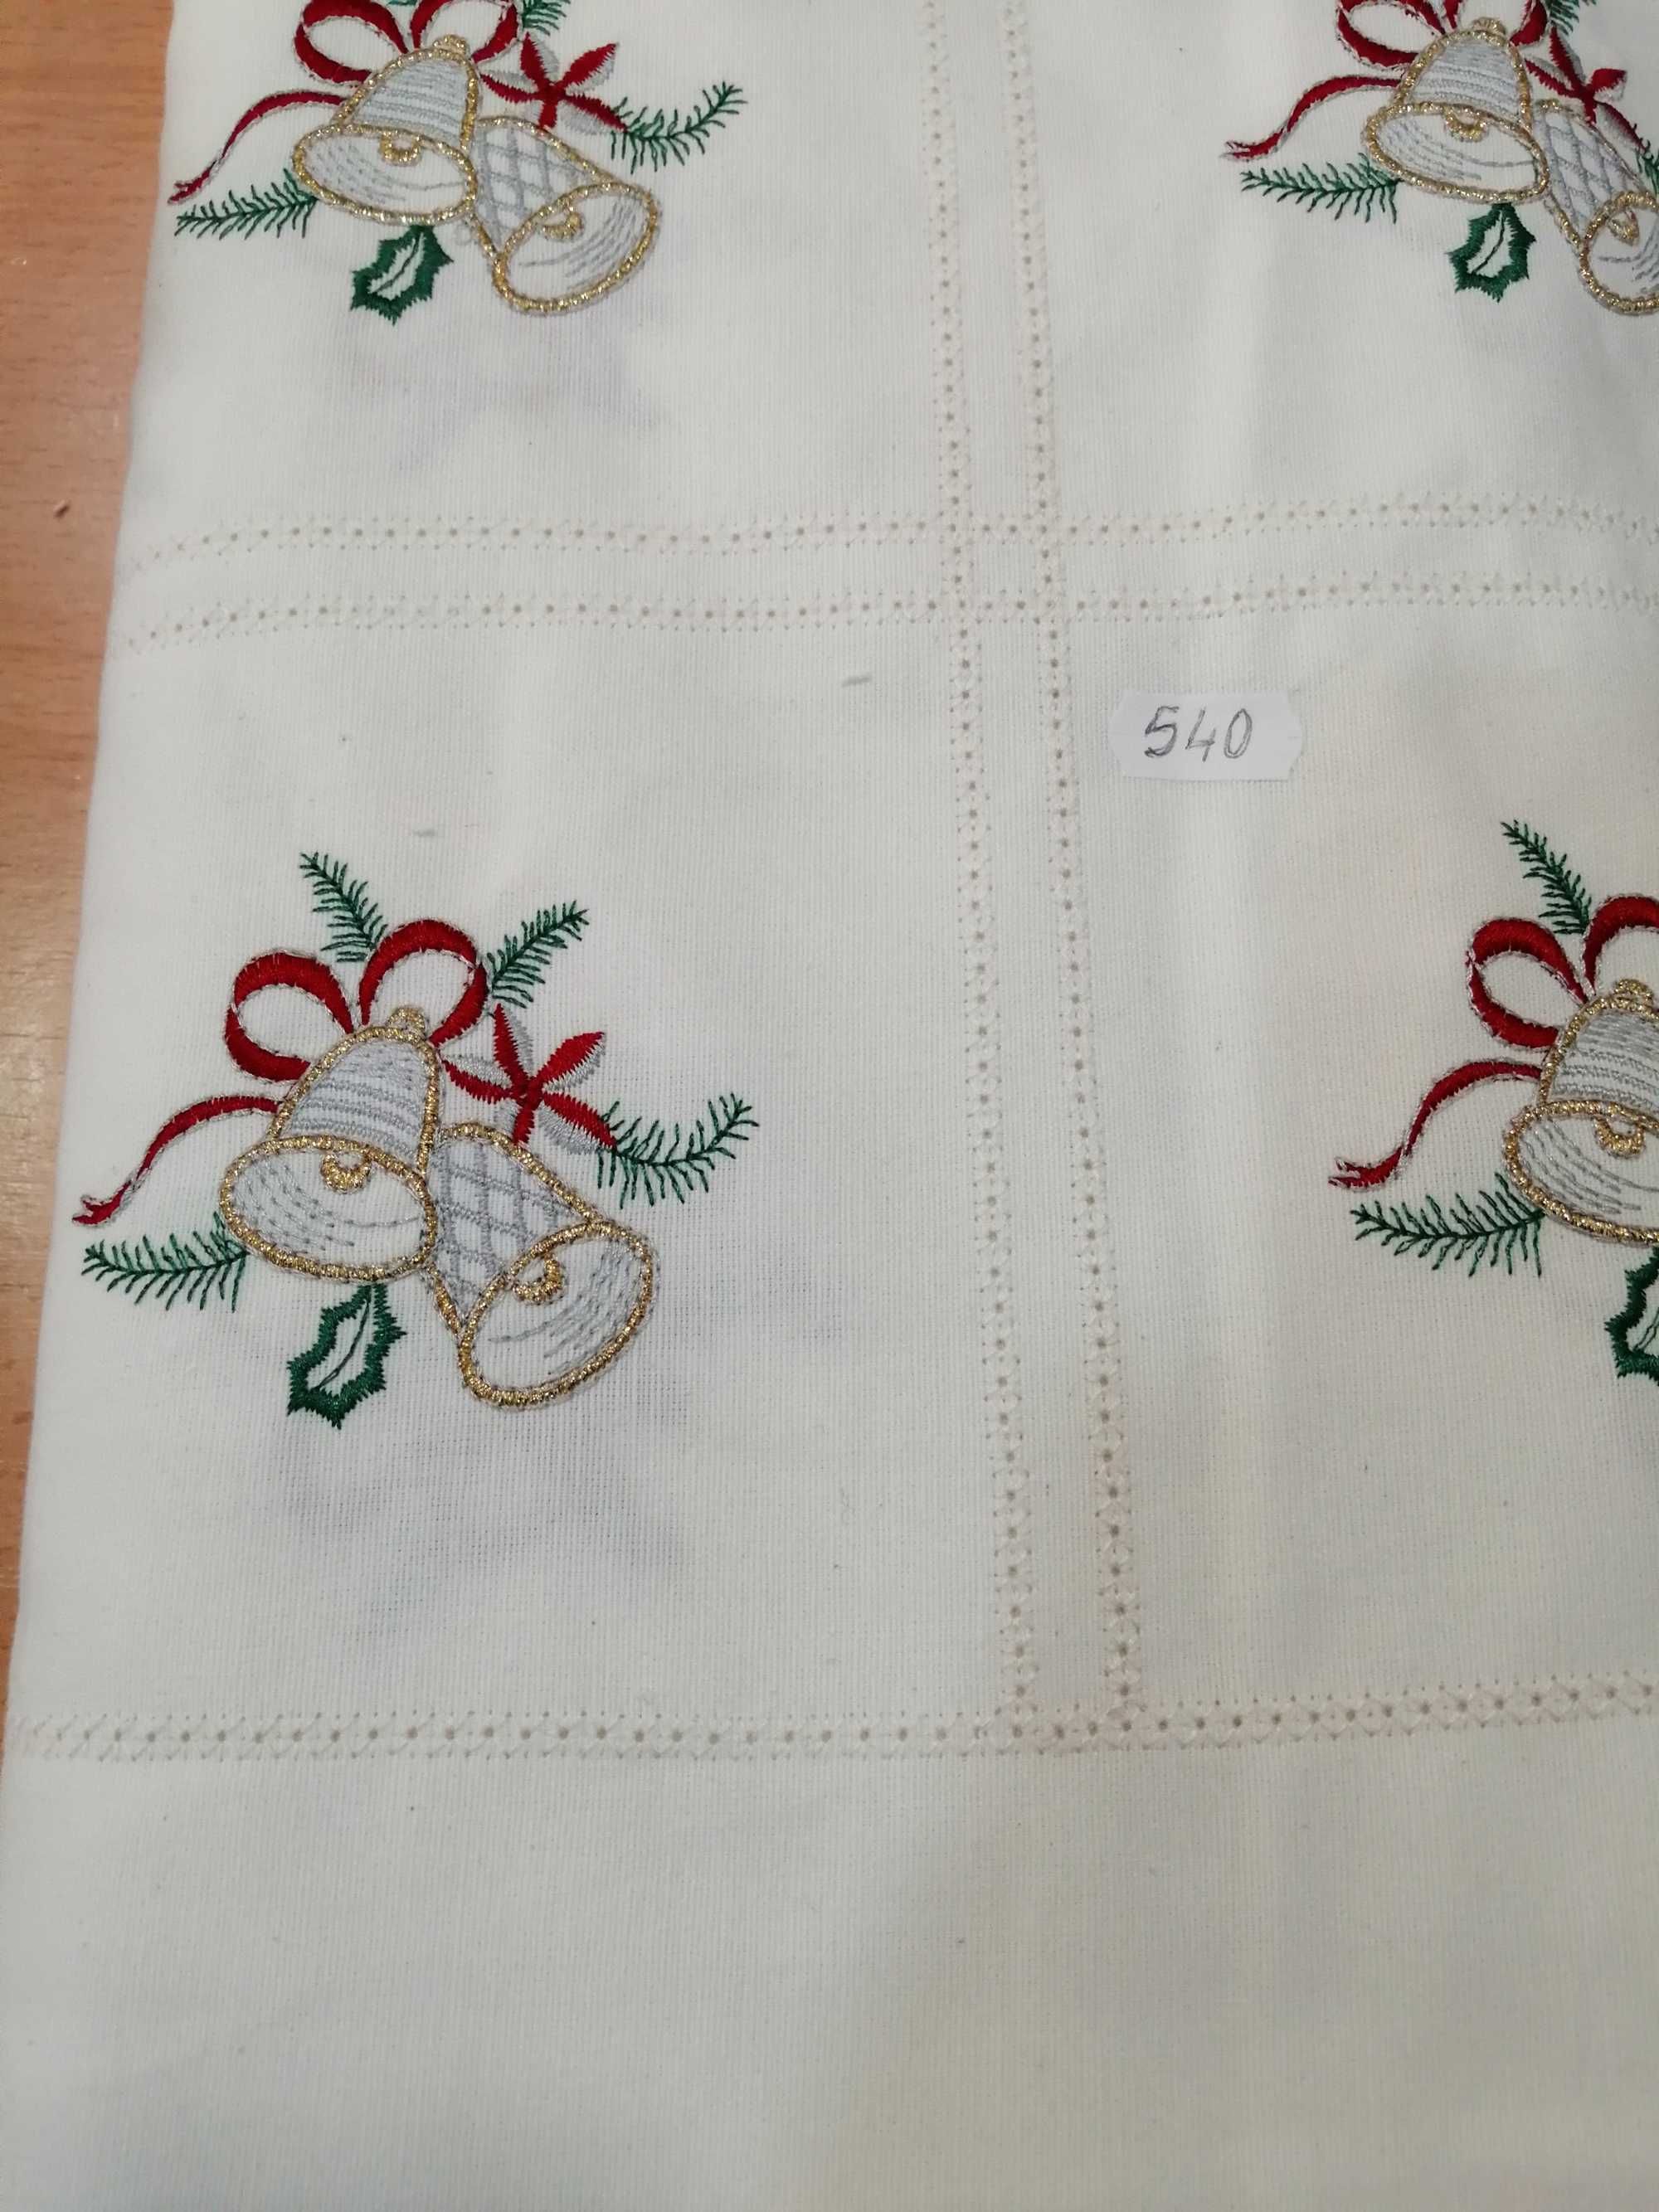 Tecidos ajourados (com bordados)